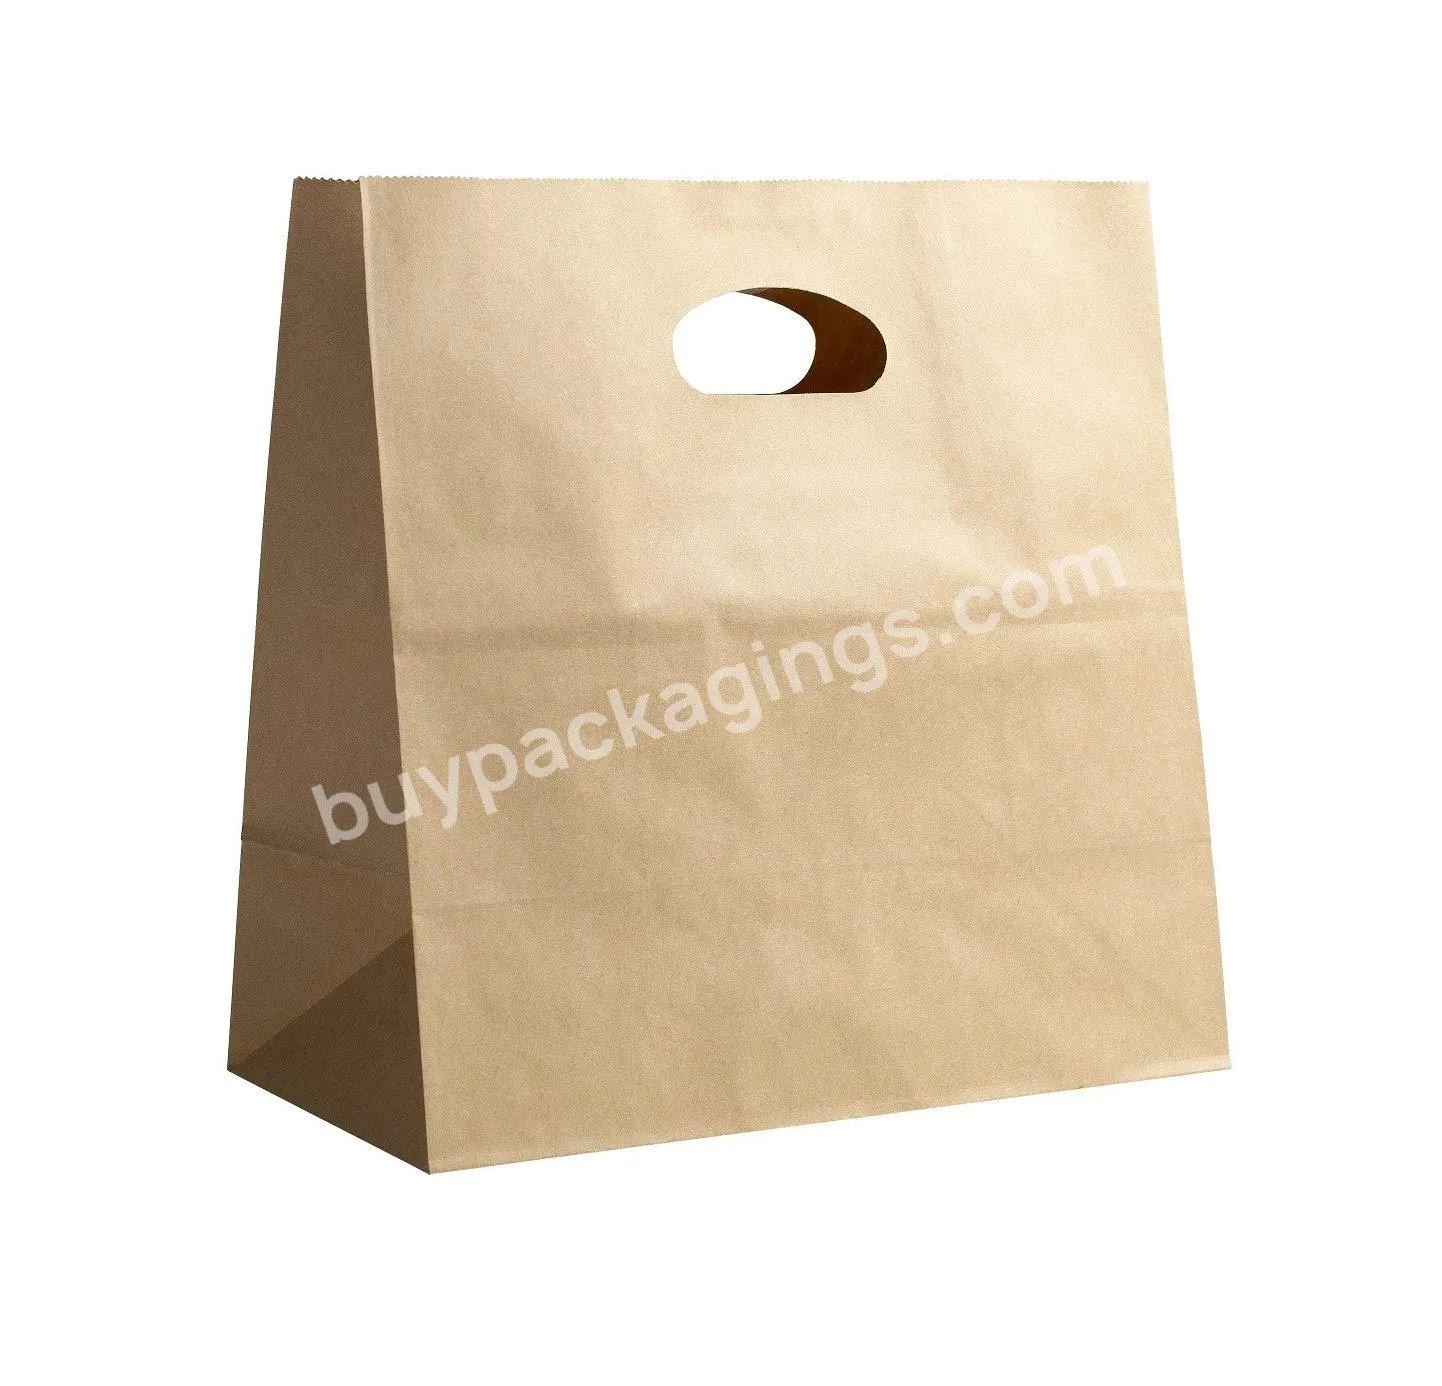 Customized Eco Friendly Large Printed Brown Kraft Paper Packaging Bags Food Takeaway Paper Bag With Die Cut Handle